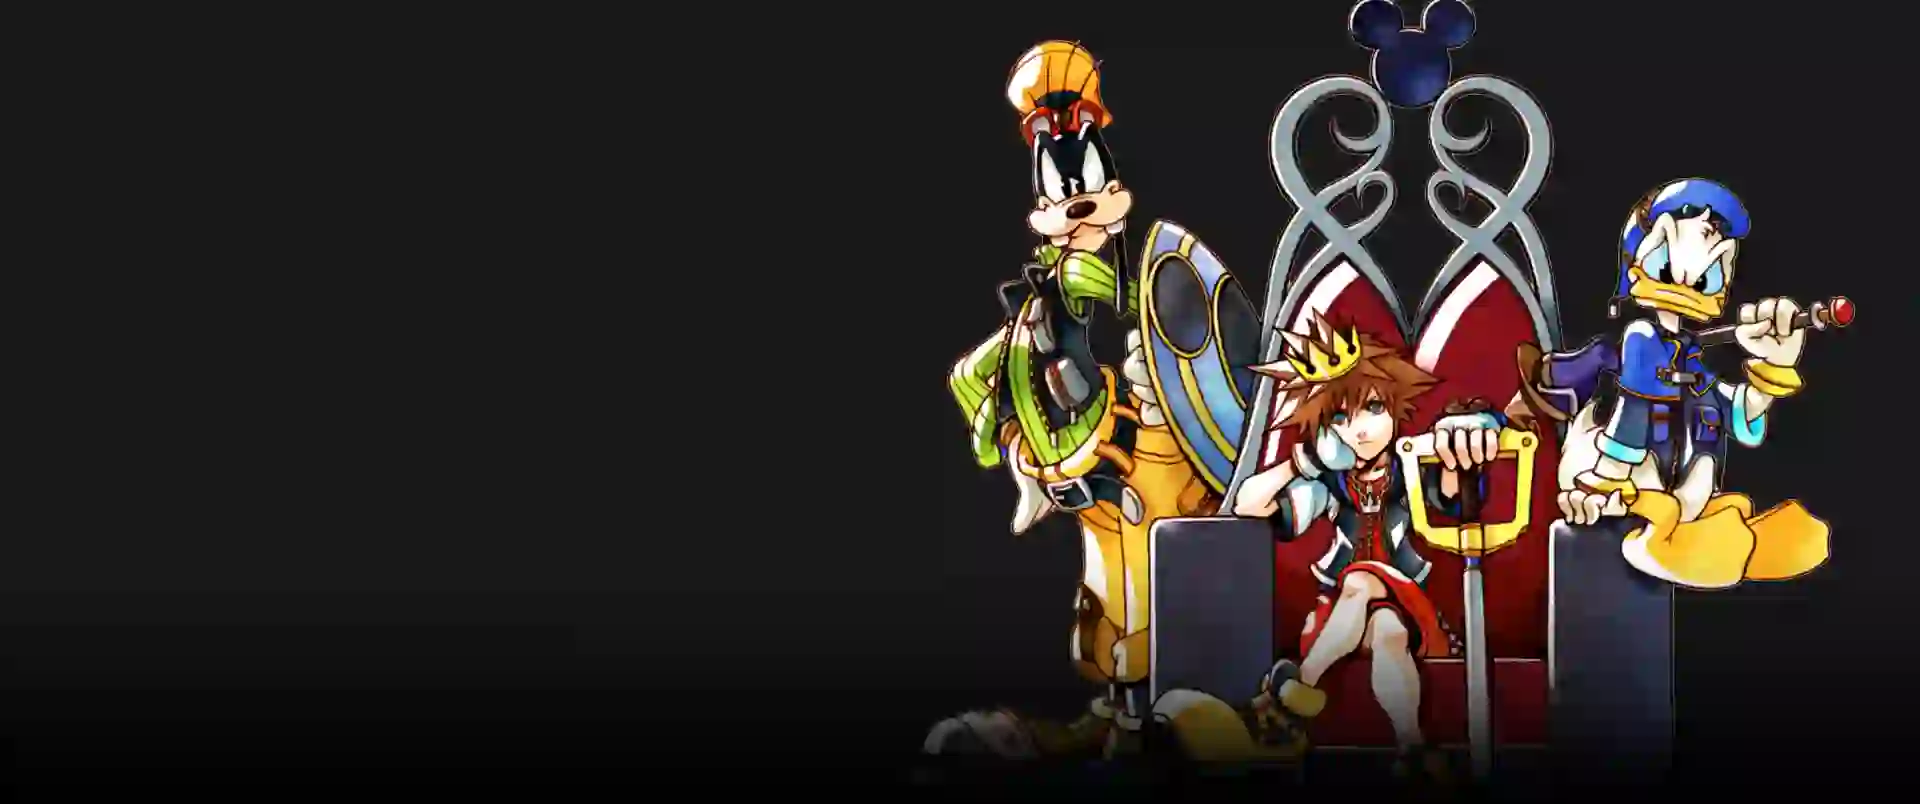 kan ikke se Over hoved og skulder Omsorg Kingdom Hearts 1.5 Best Accessories - Captions Lovely